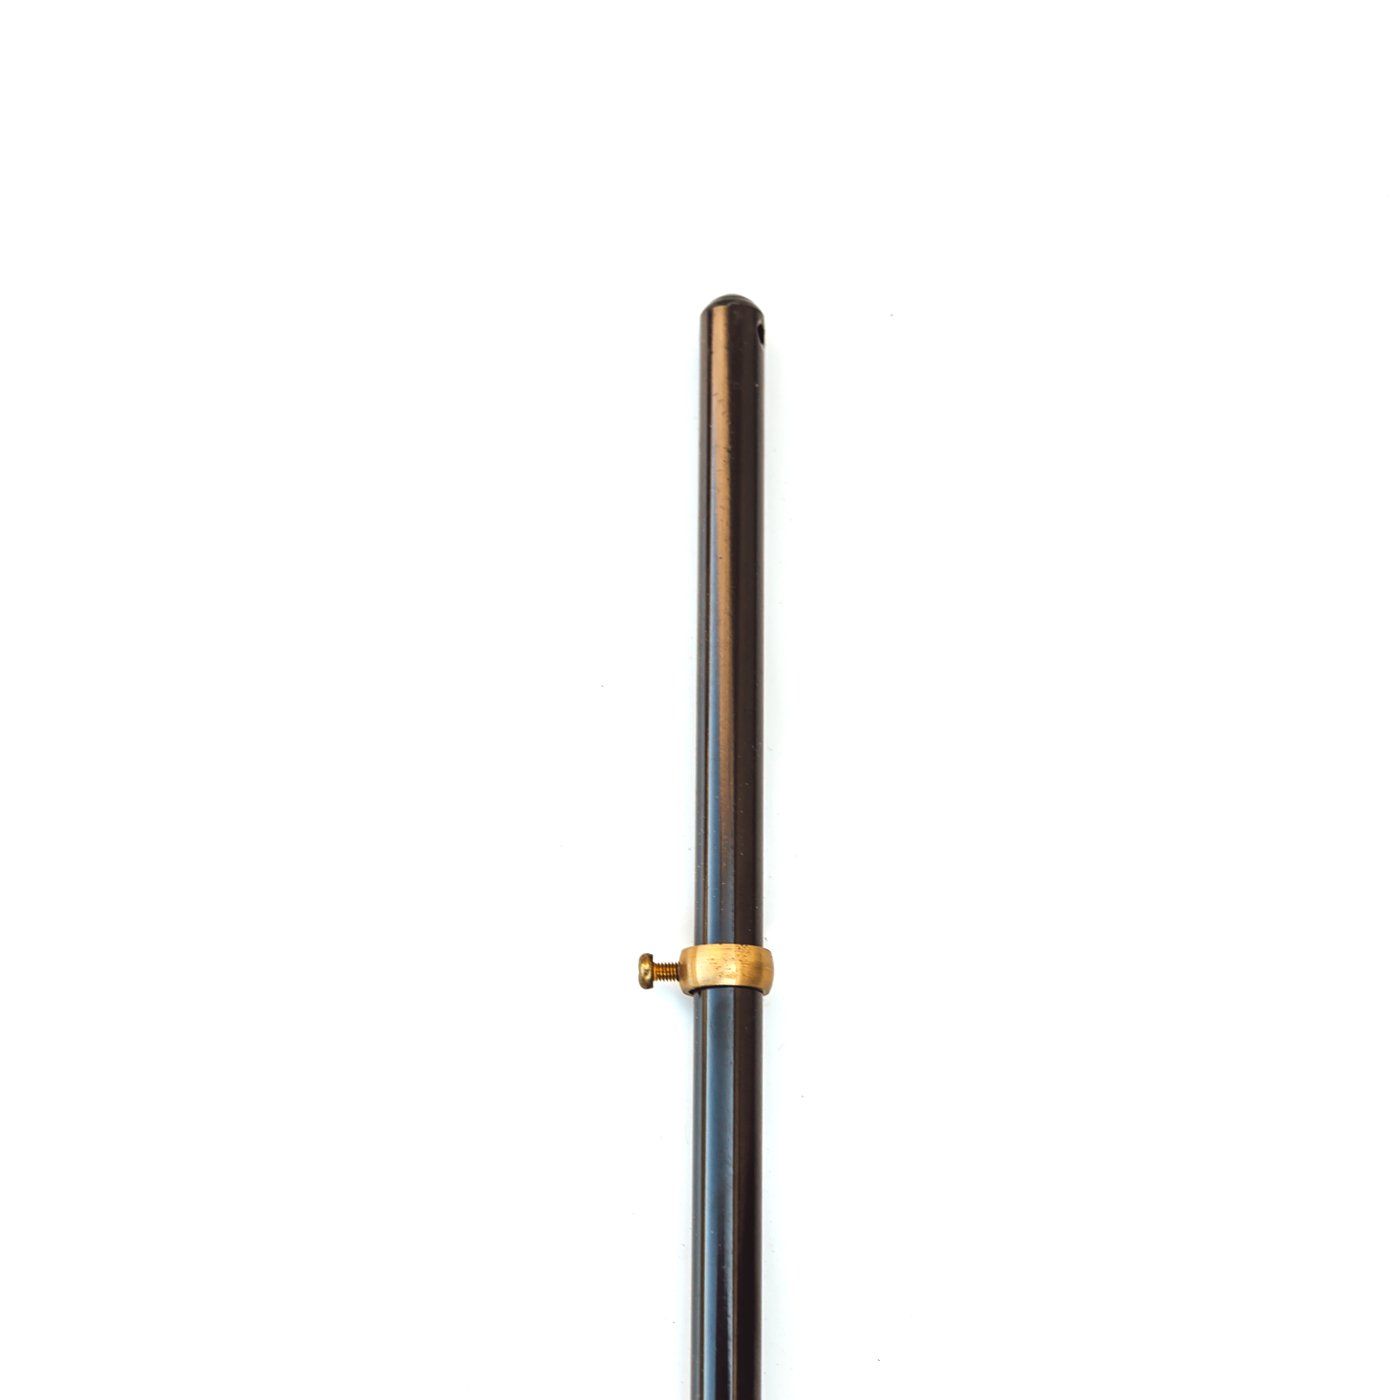 Grondbeugel voor middelgrote windwijzers - grondplug 55 cm